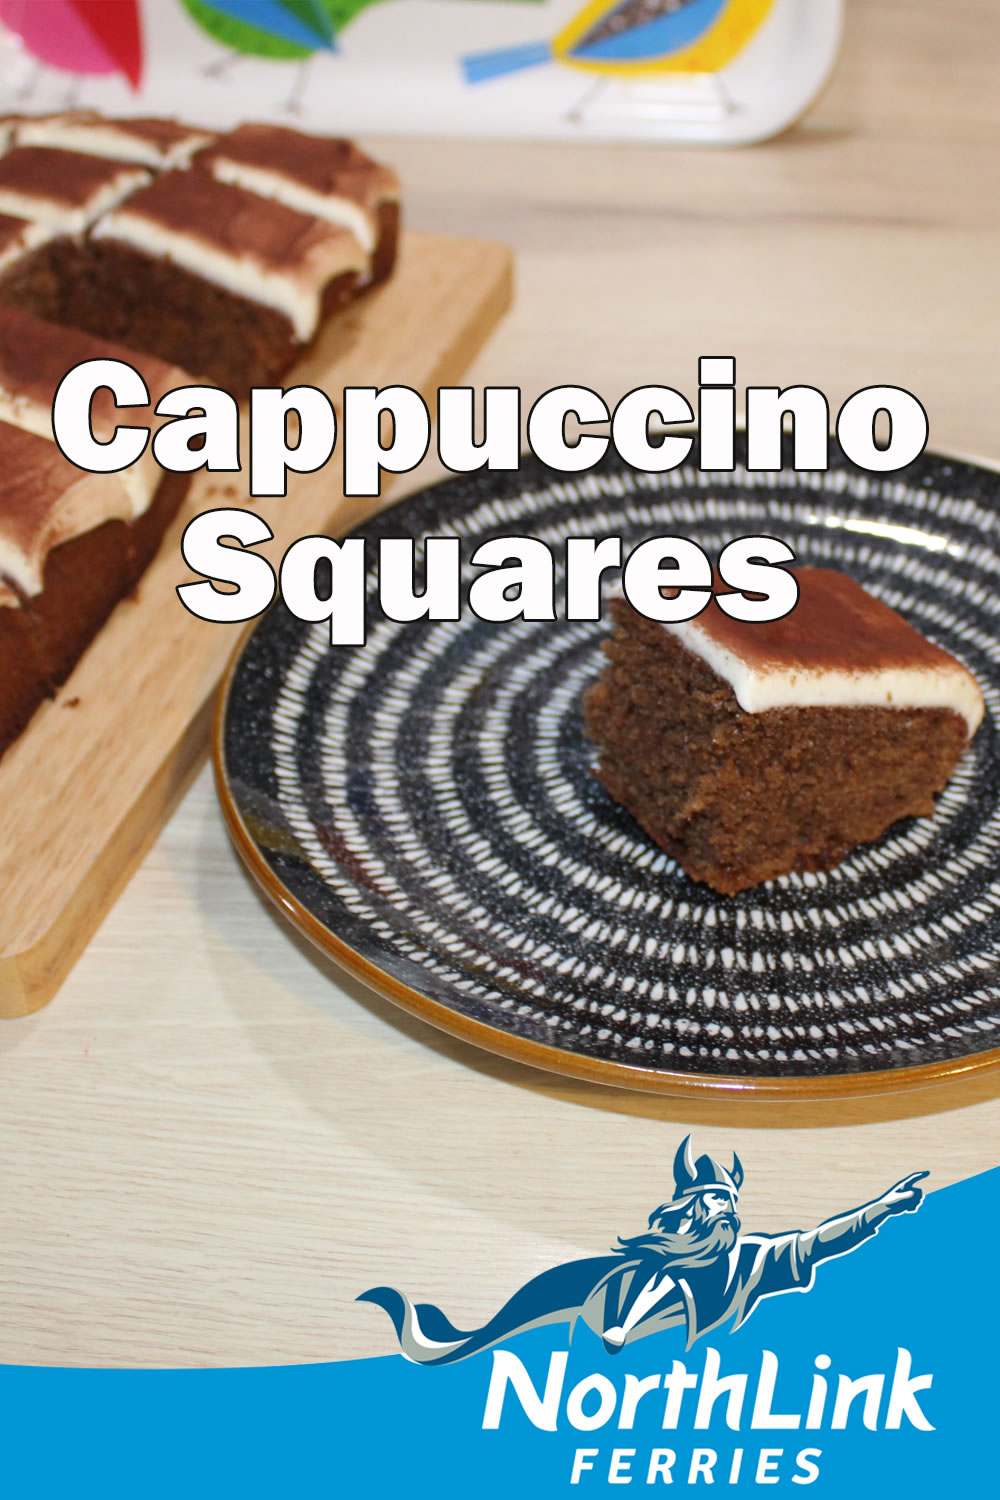 Cappuccino Squares